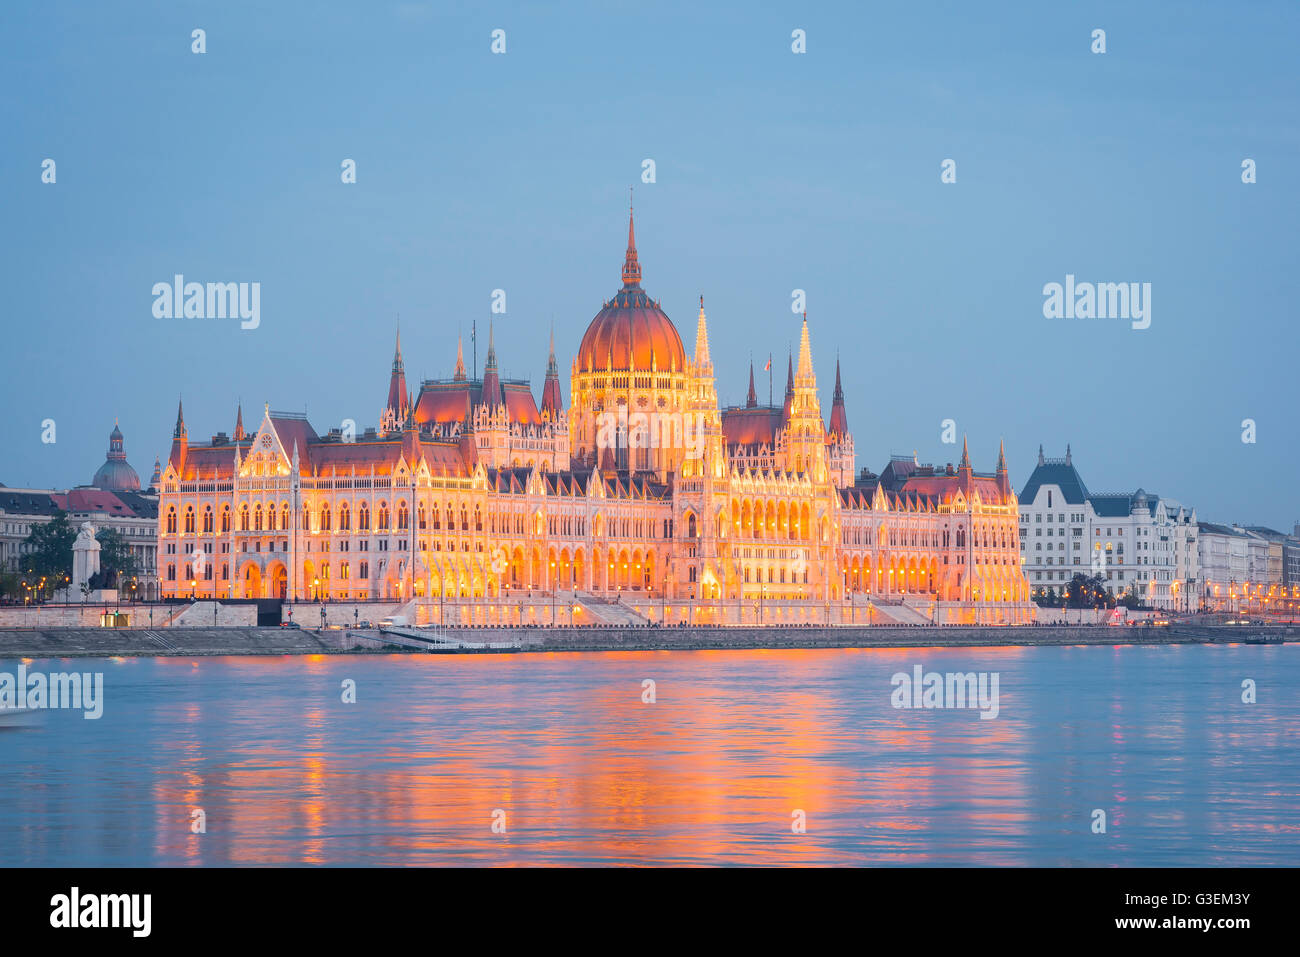 Bâtiment du Parlement de Budapest, vue panoramique sur le bâtiment du Parlement de Budapest illuminé la nuit, Hongrie. Banque D'Images